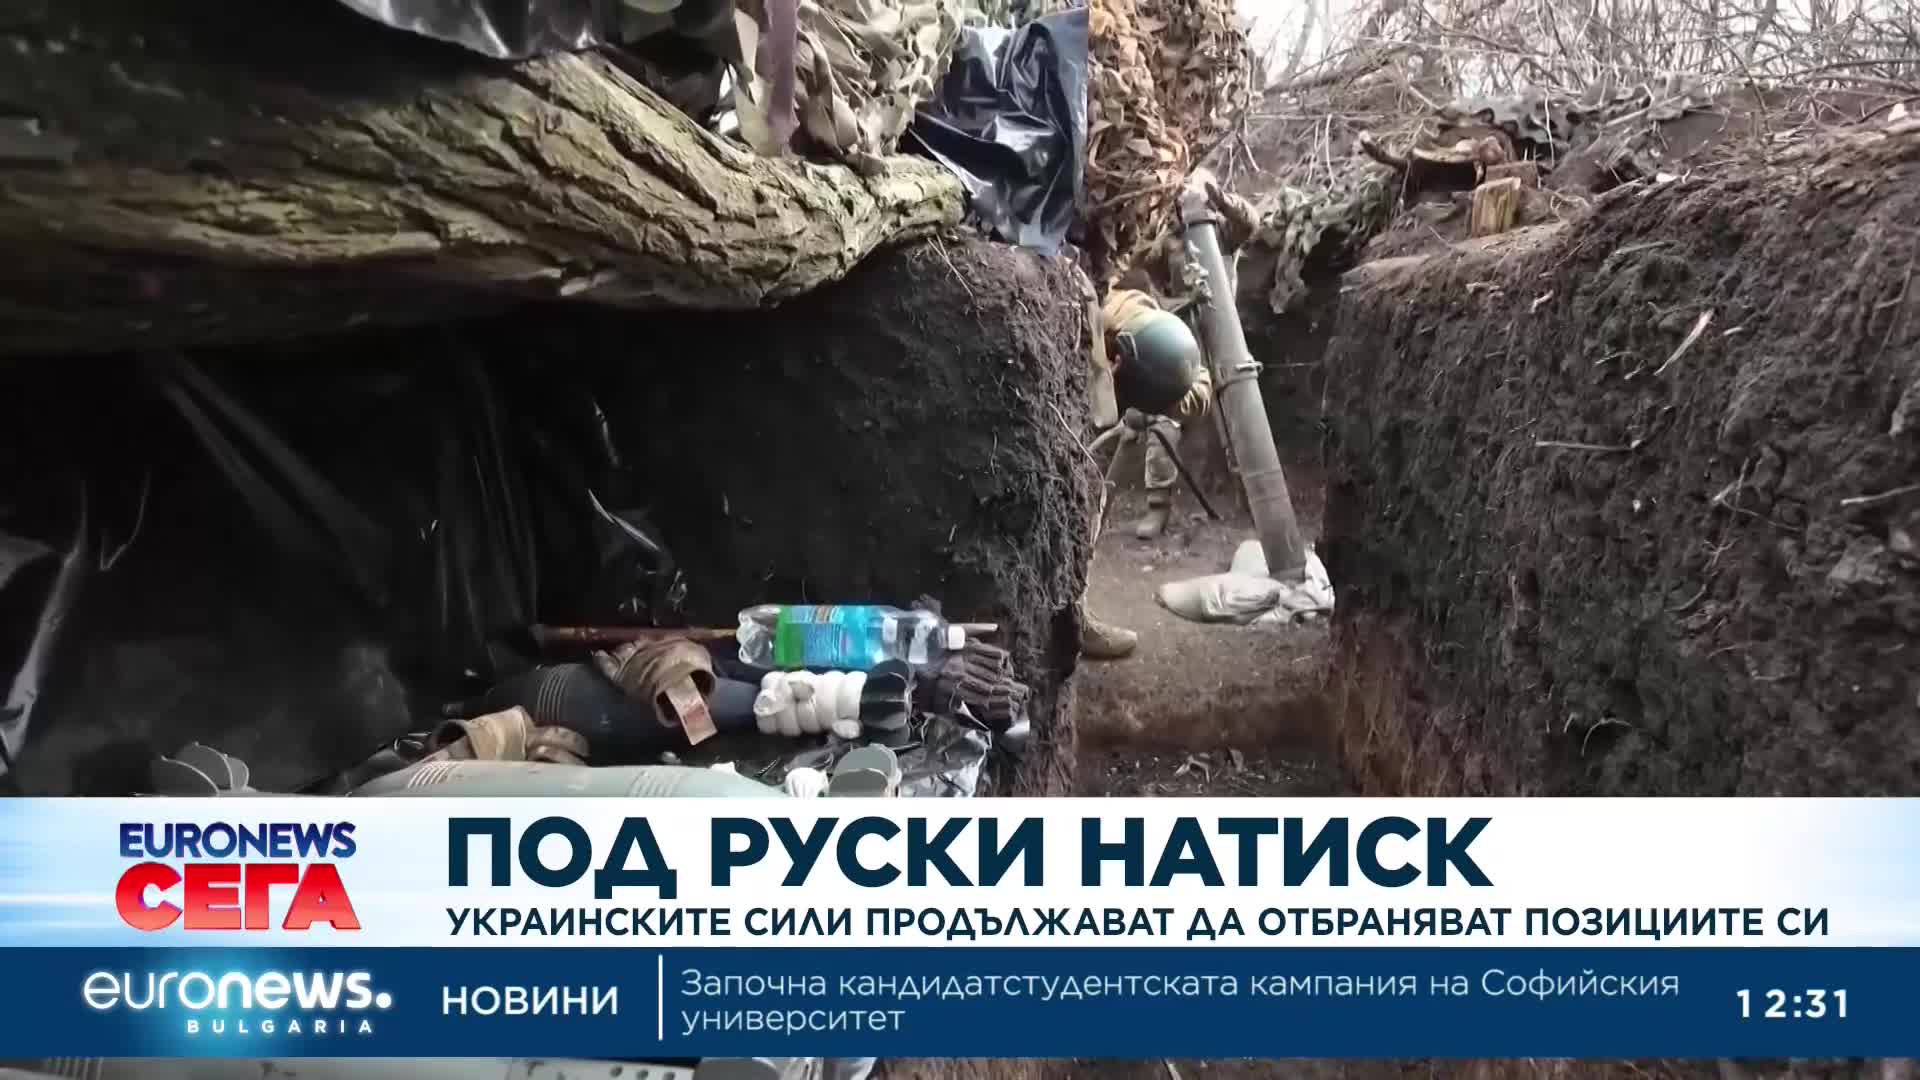 Украинските сили продължават да отбраняват позициите си под засилен руски натиск